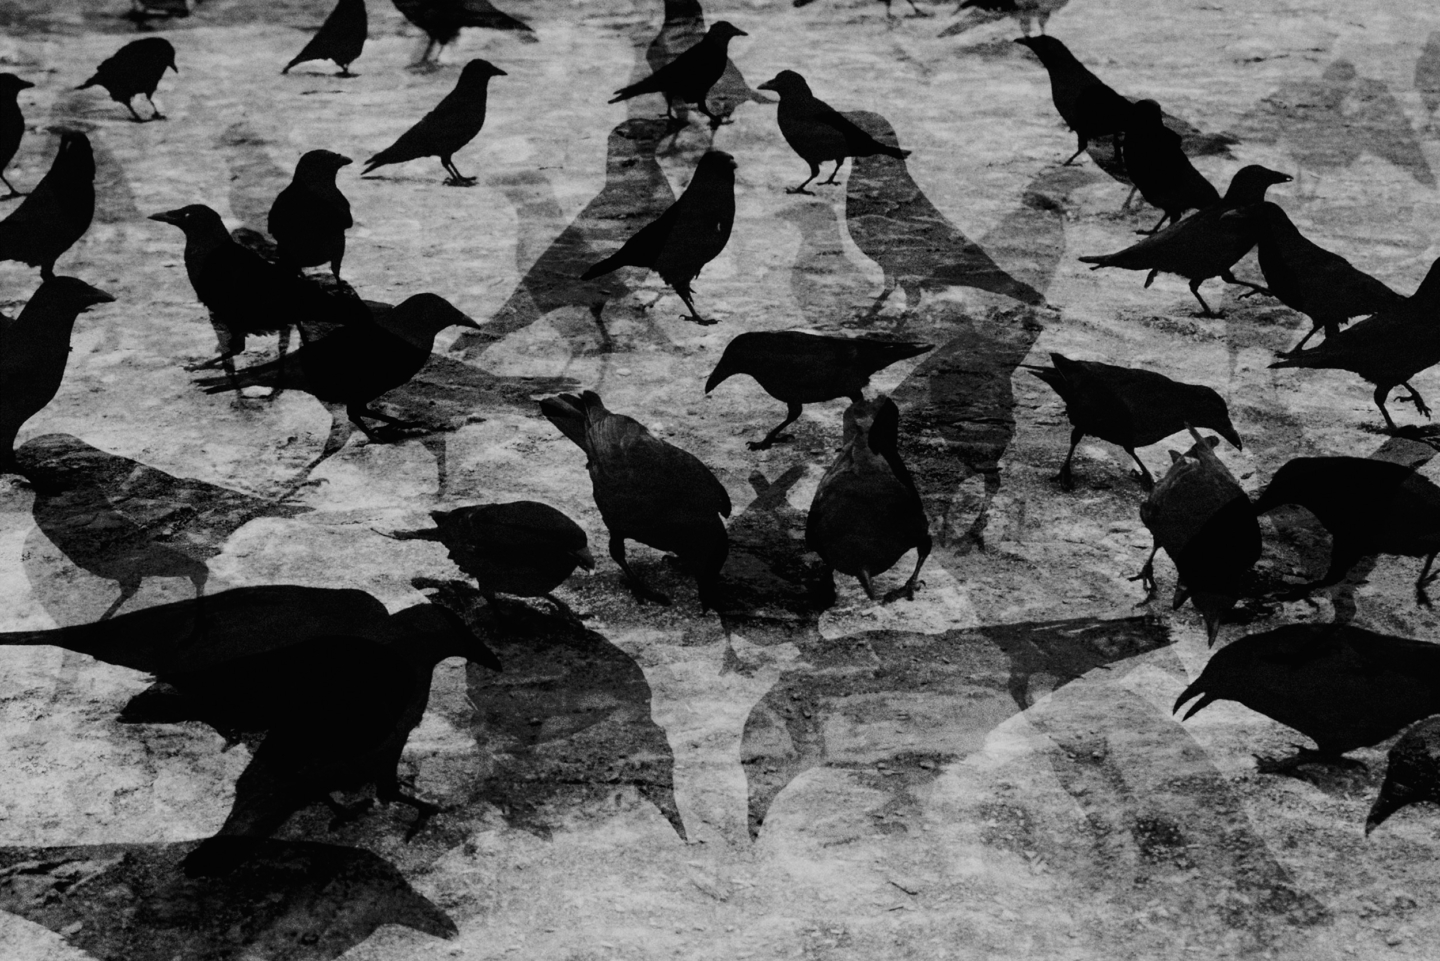 Crows for Zeit Verbrechen